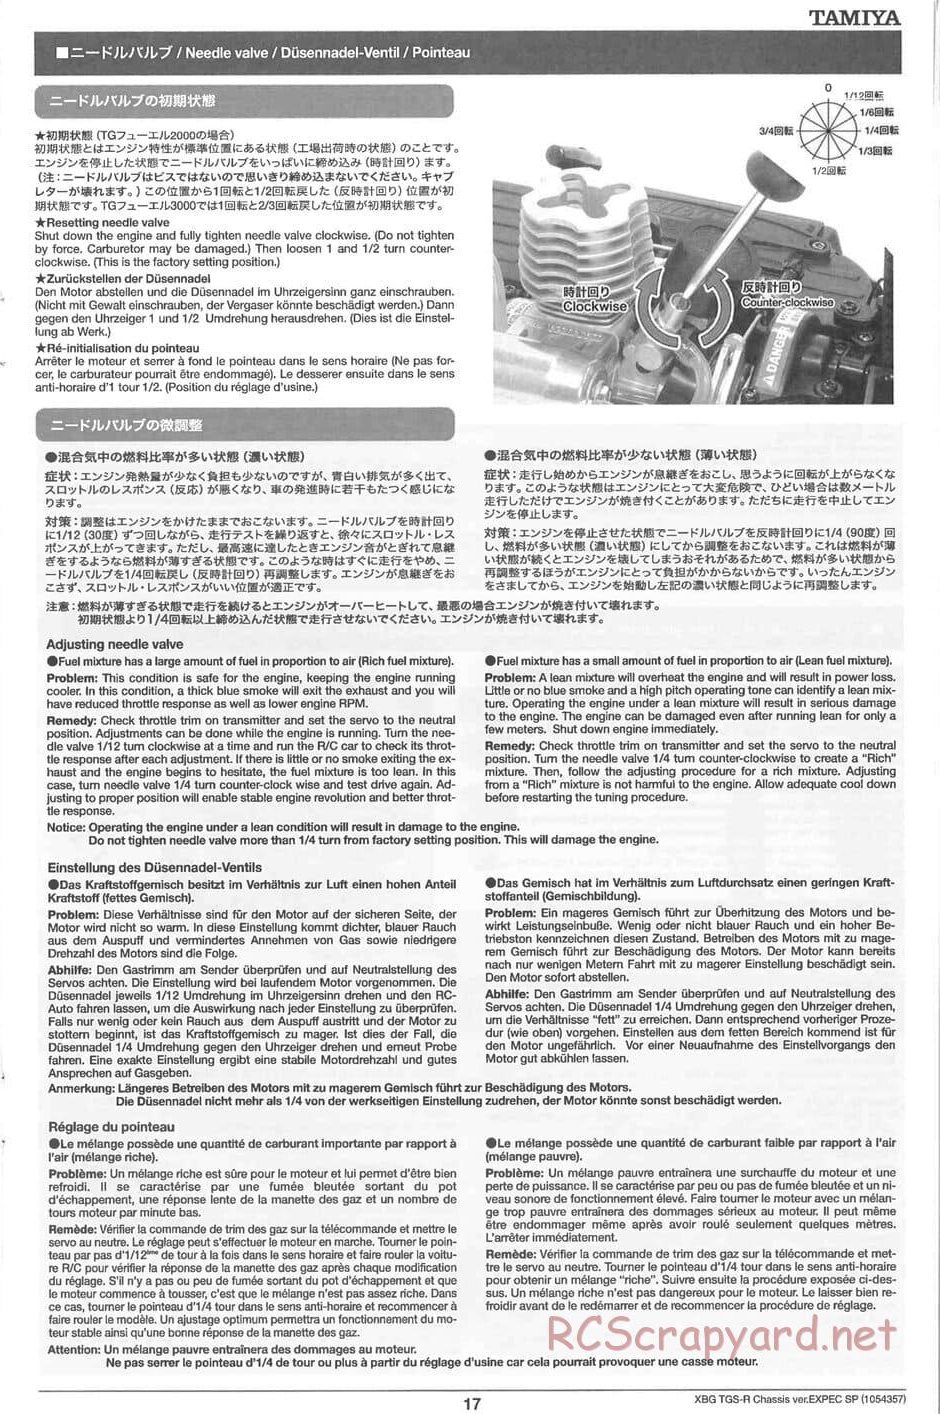 Tamiya - TGS-R Chassis - Manual - Page 17